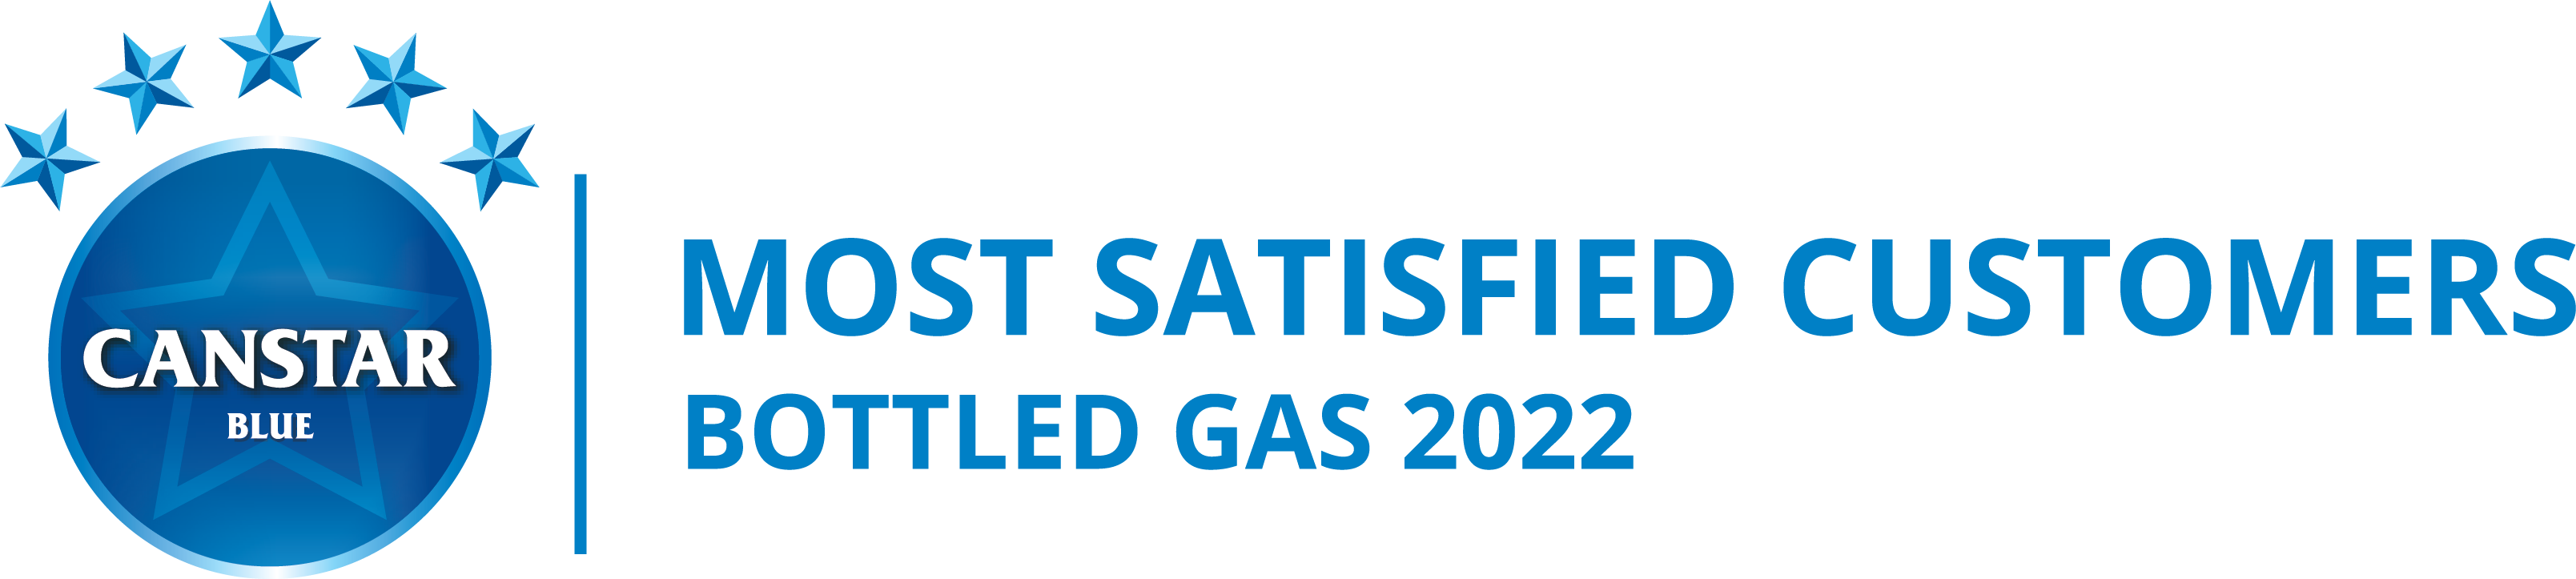 MSC bottled gas award logo 2022